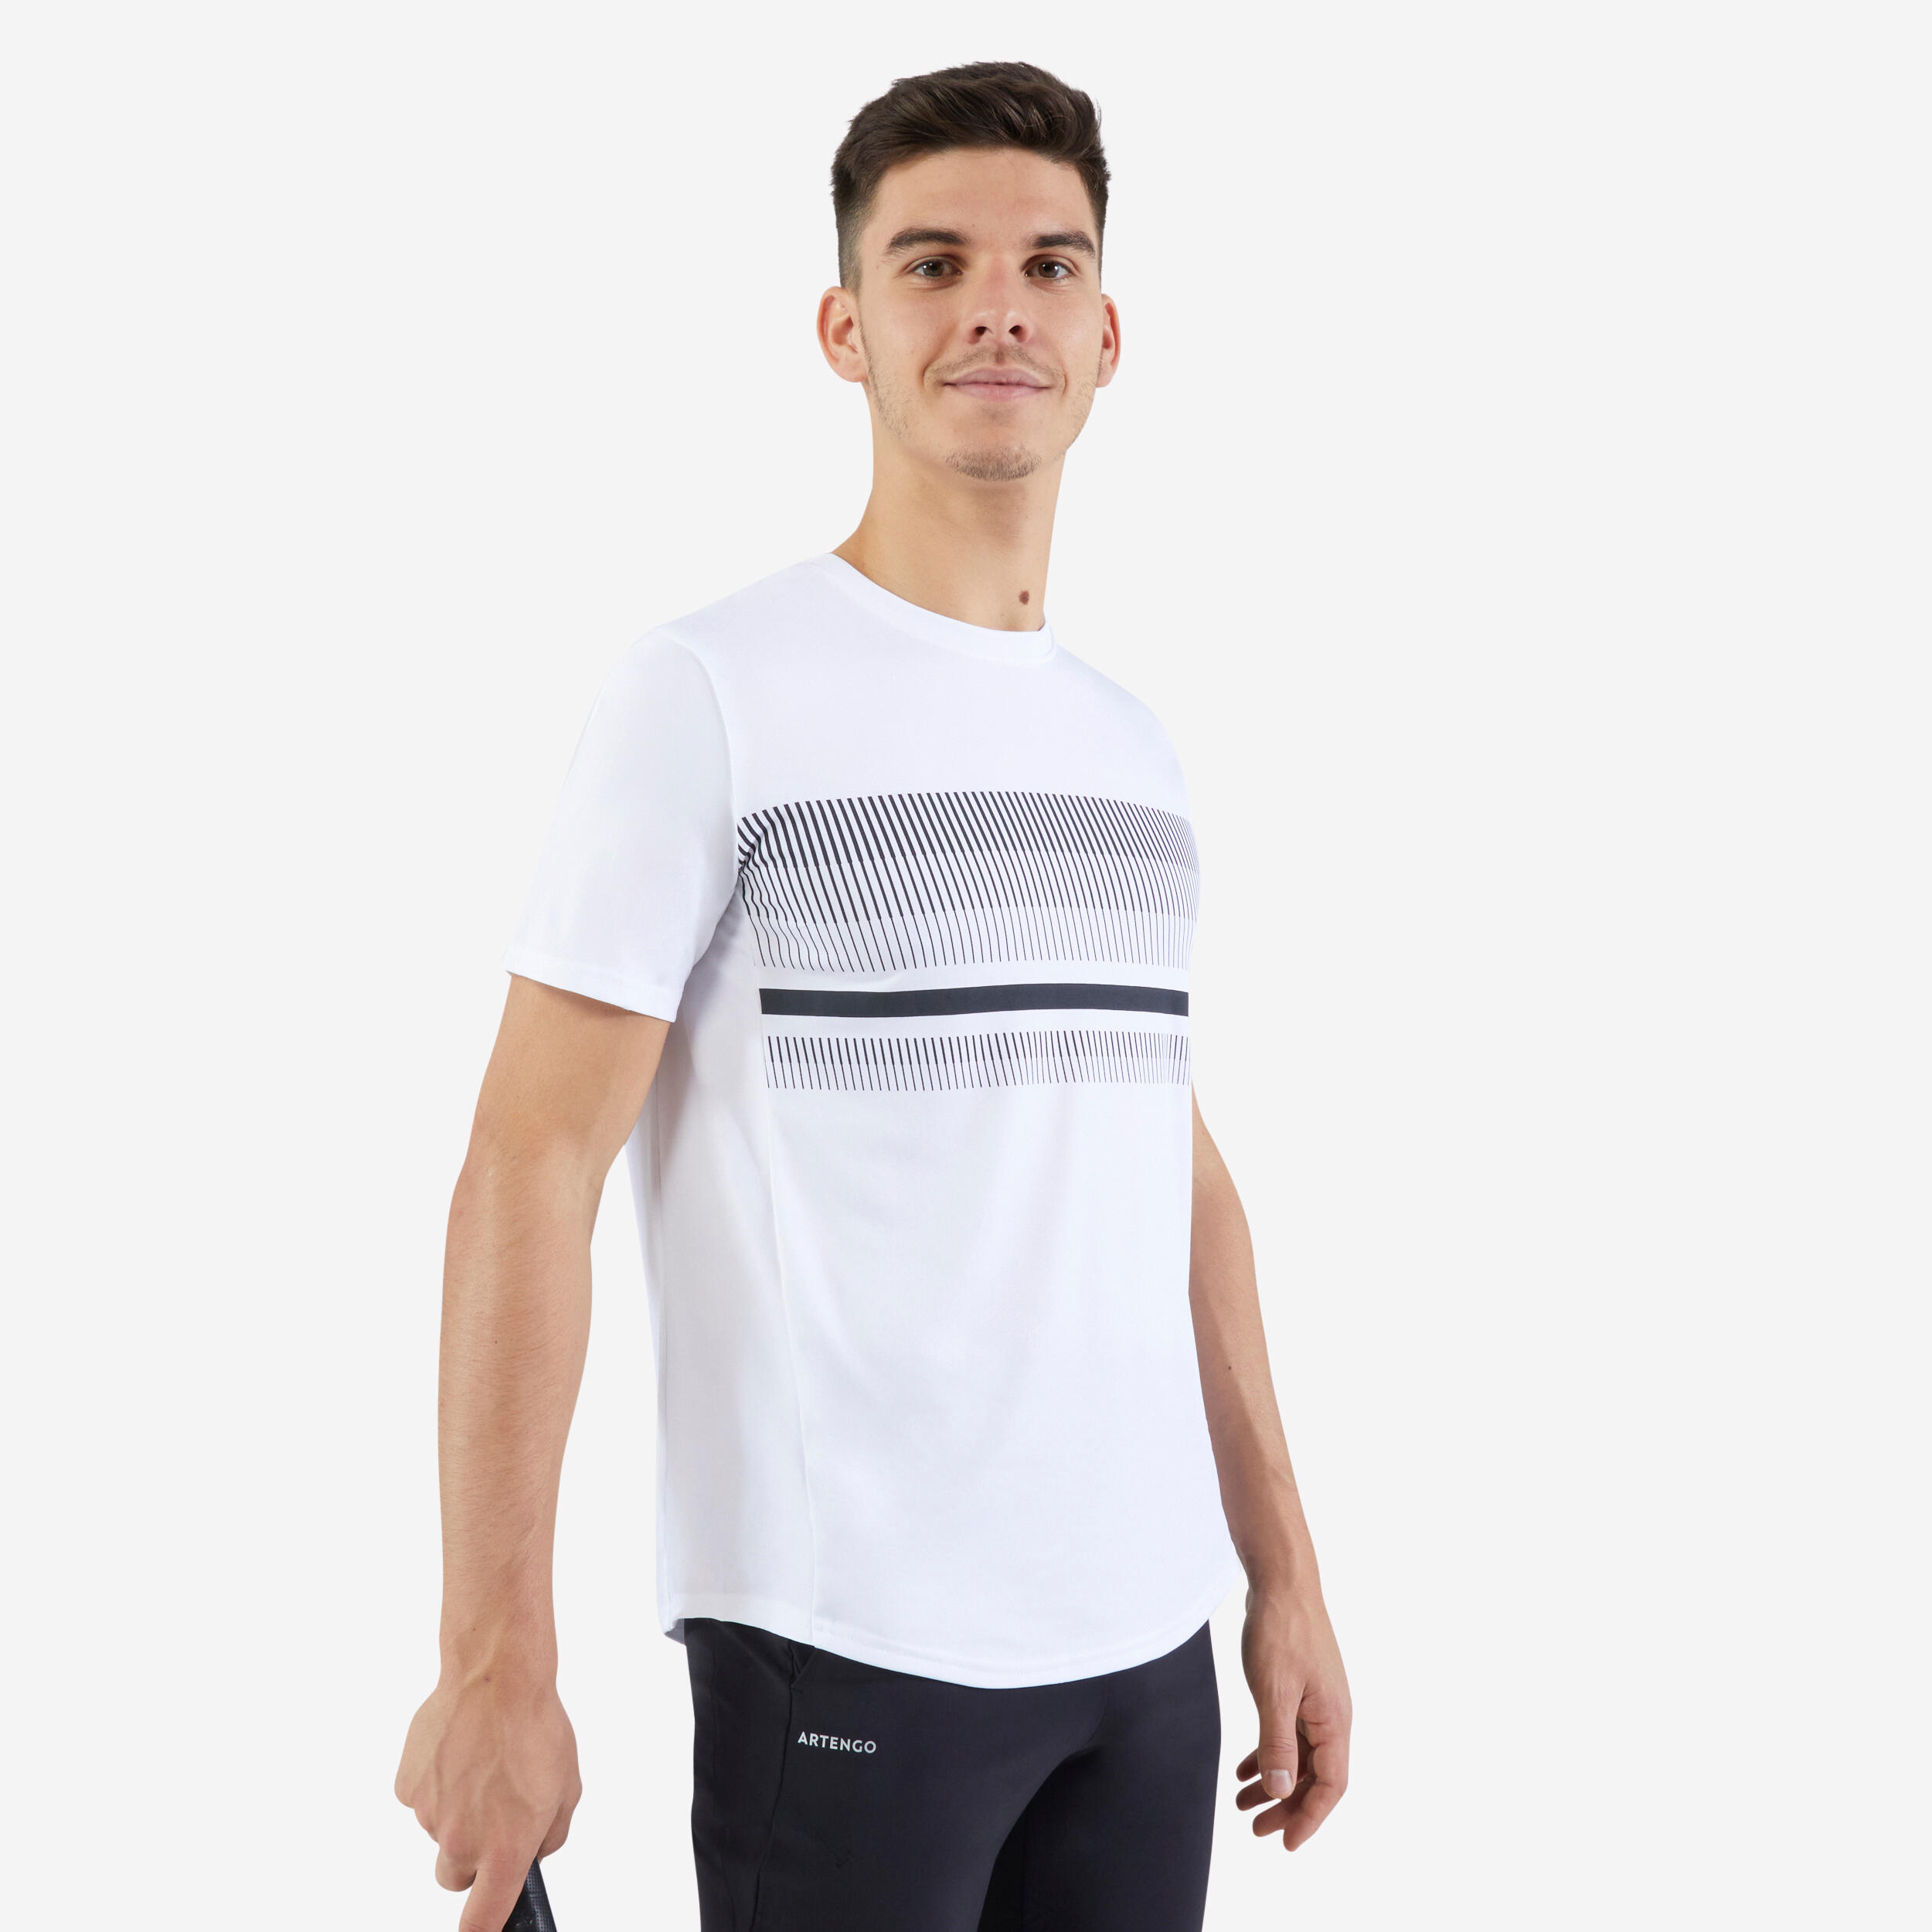 ARTENGO T-Shirt De Tennis Manches Courtes Homme - Essential Blanc